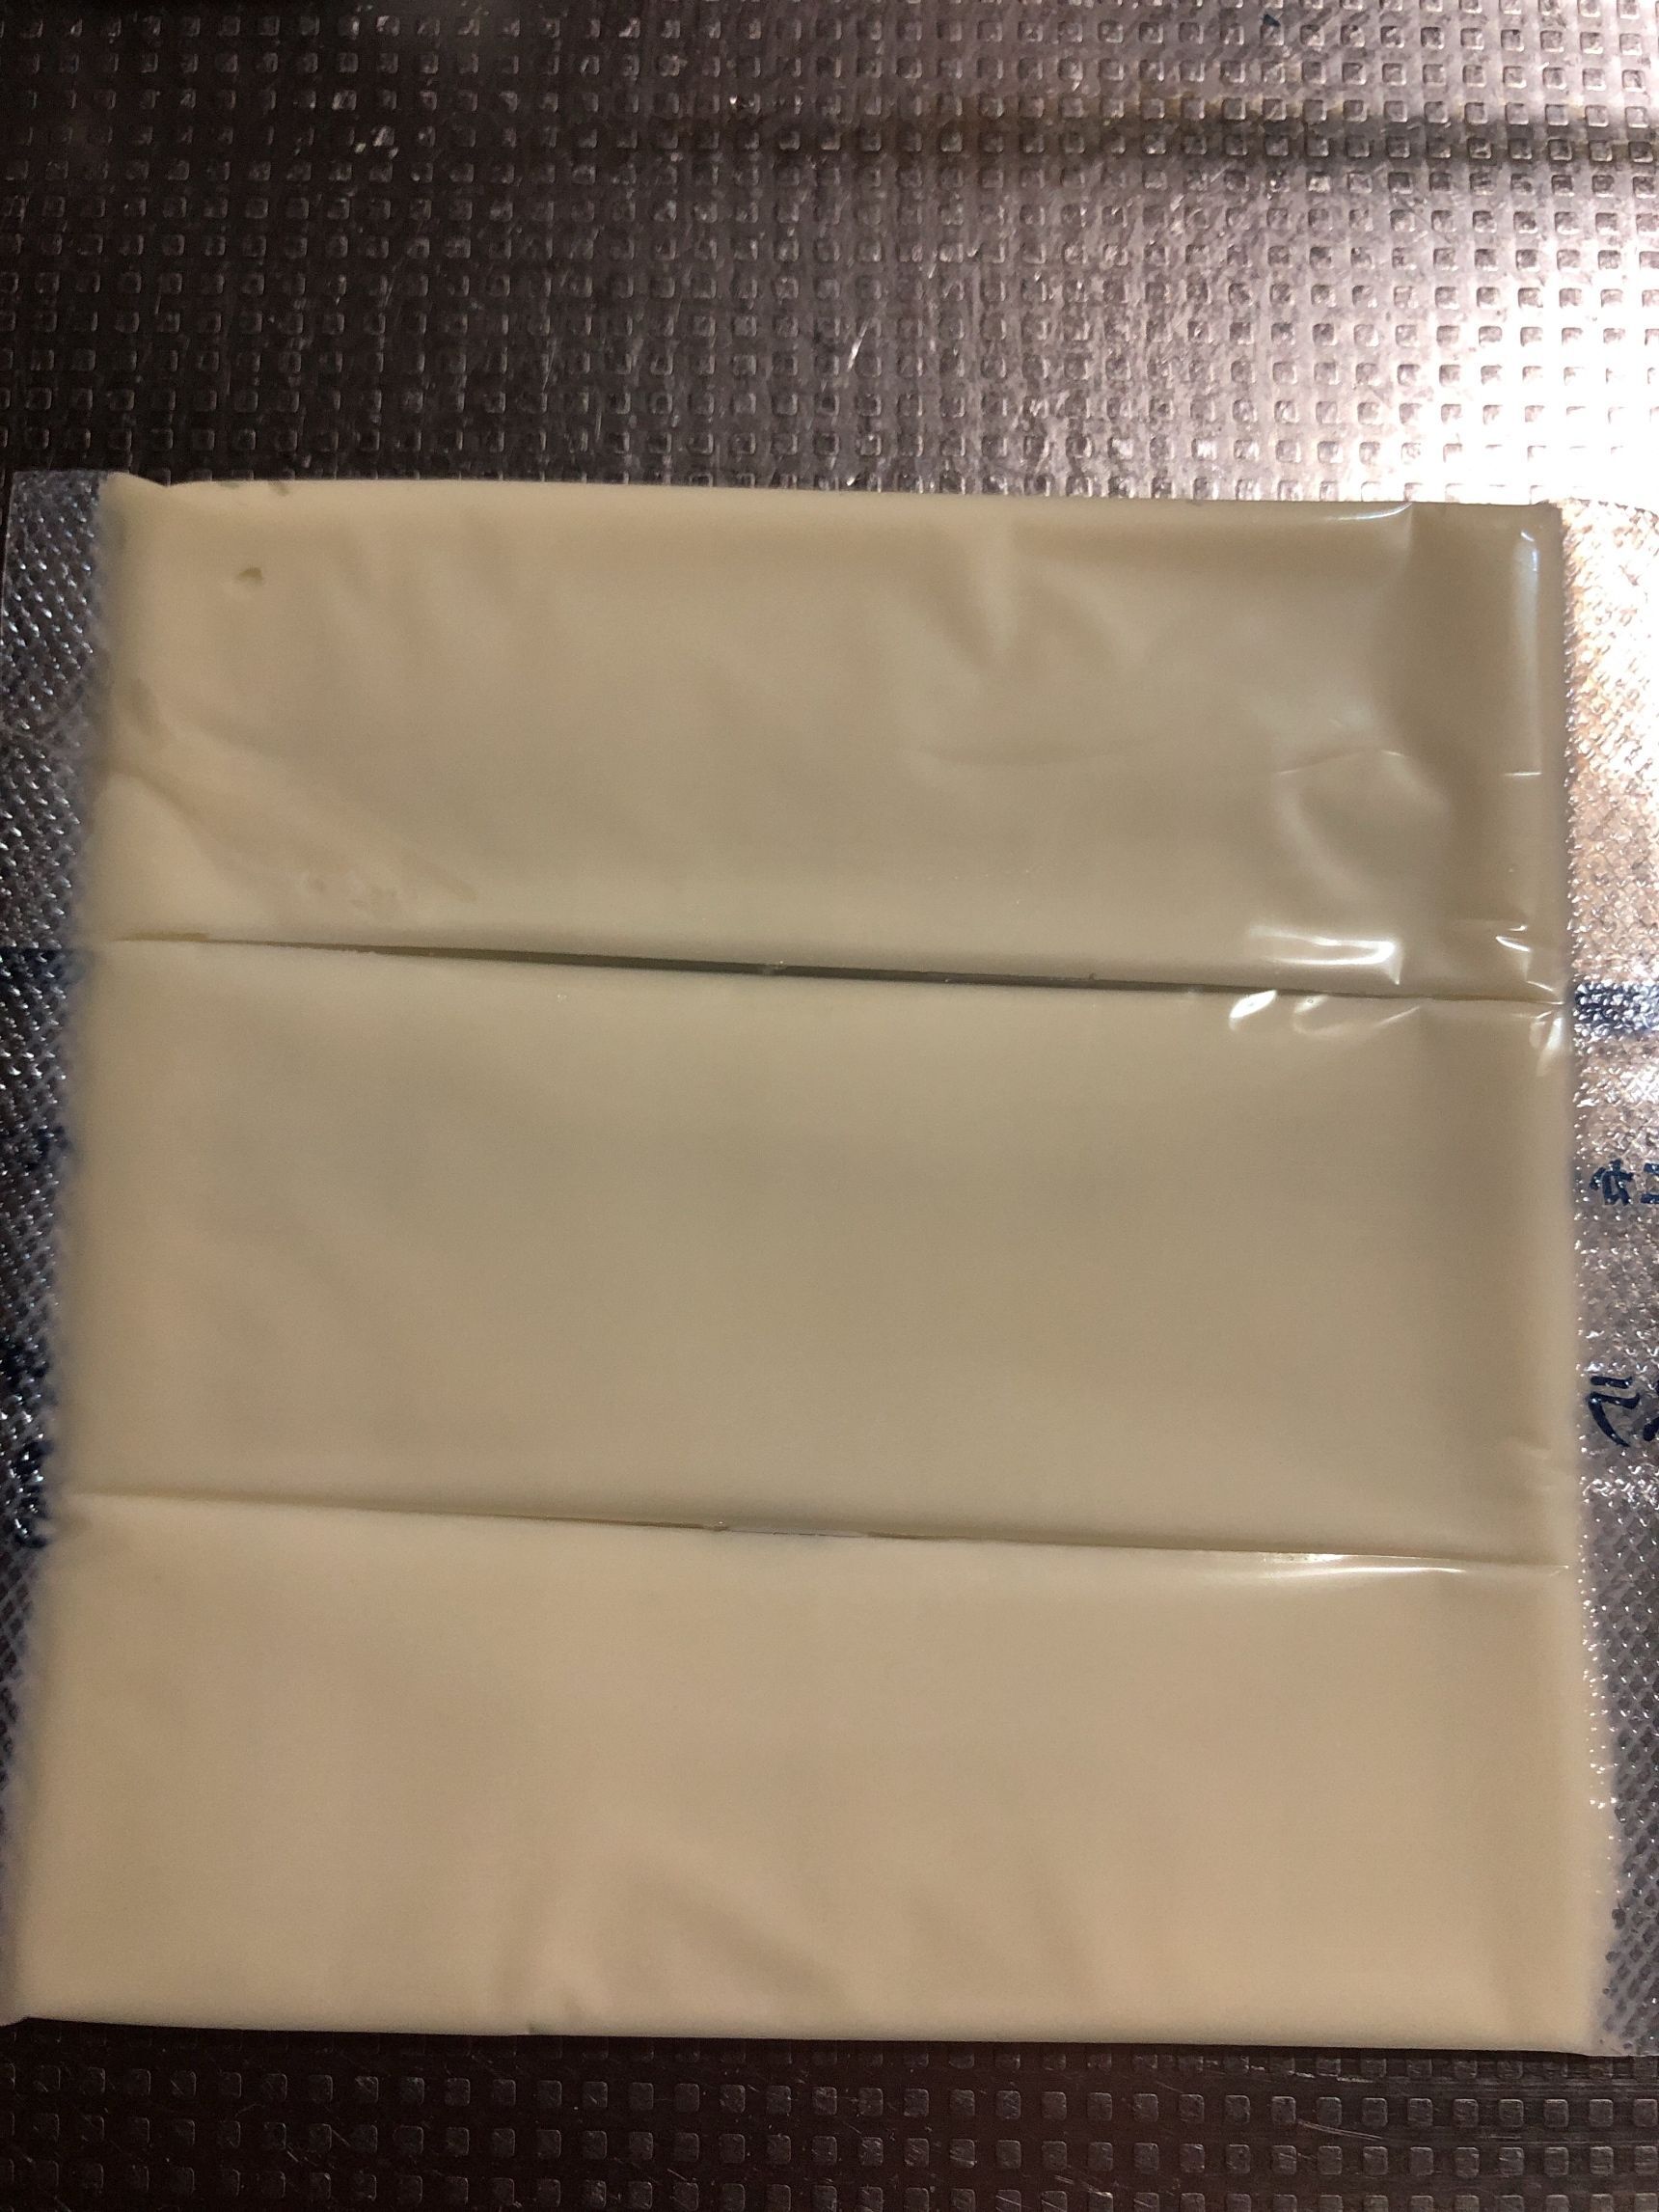 スライスチーズをフィルムの上から包丁で切ります